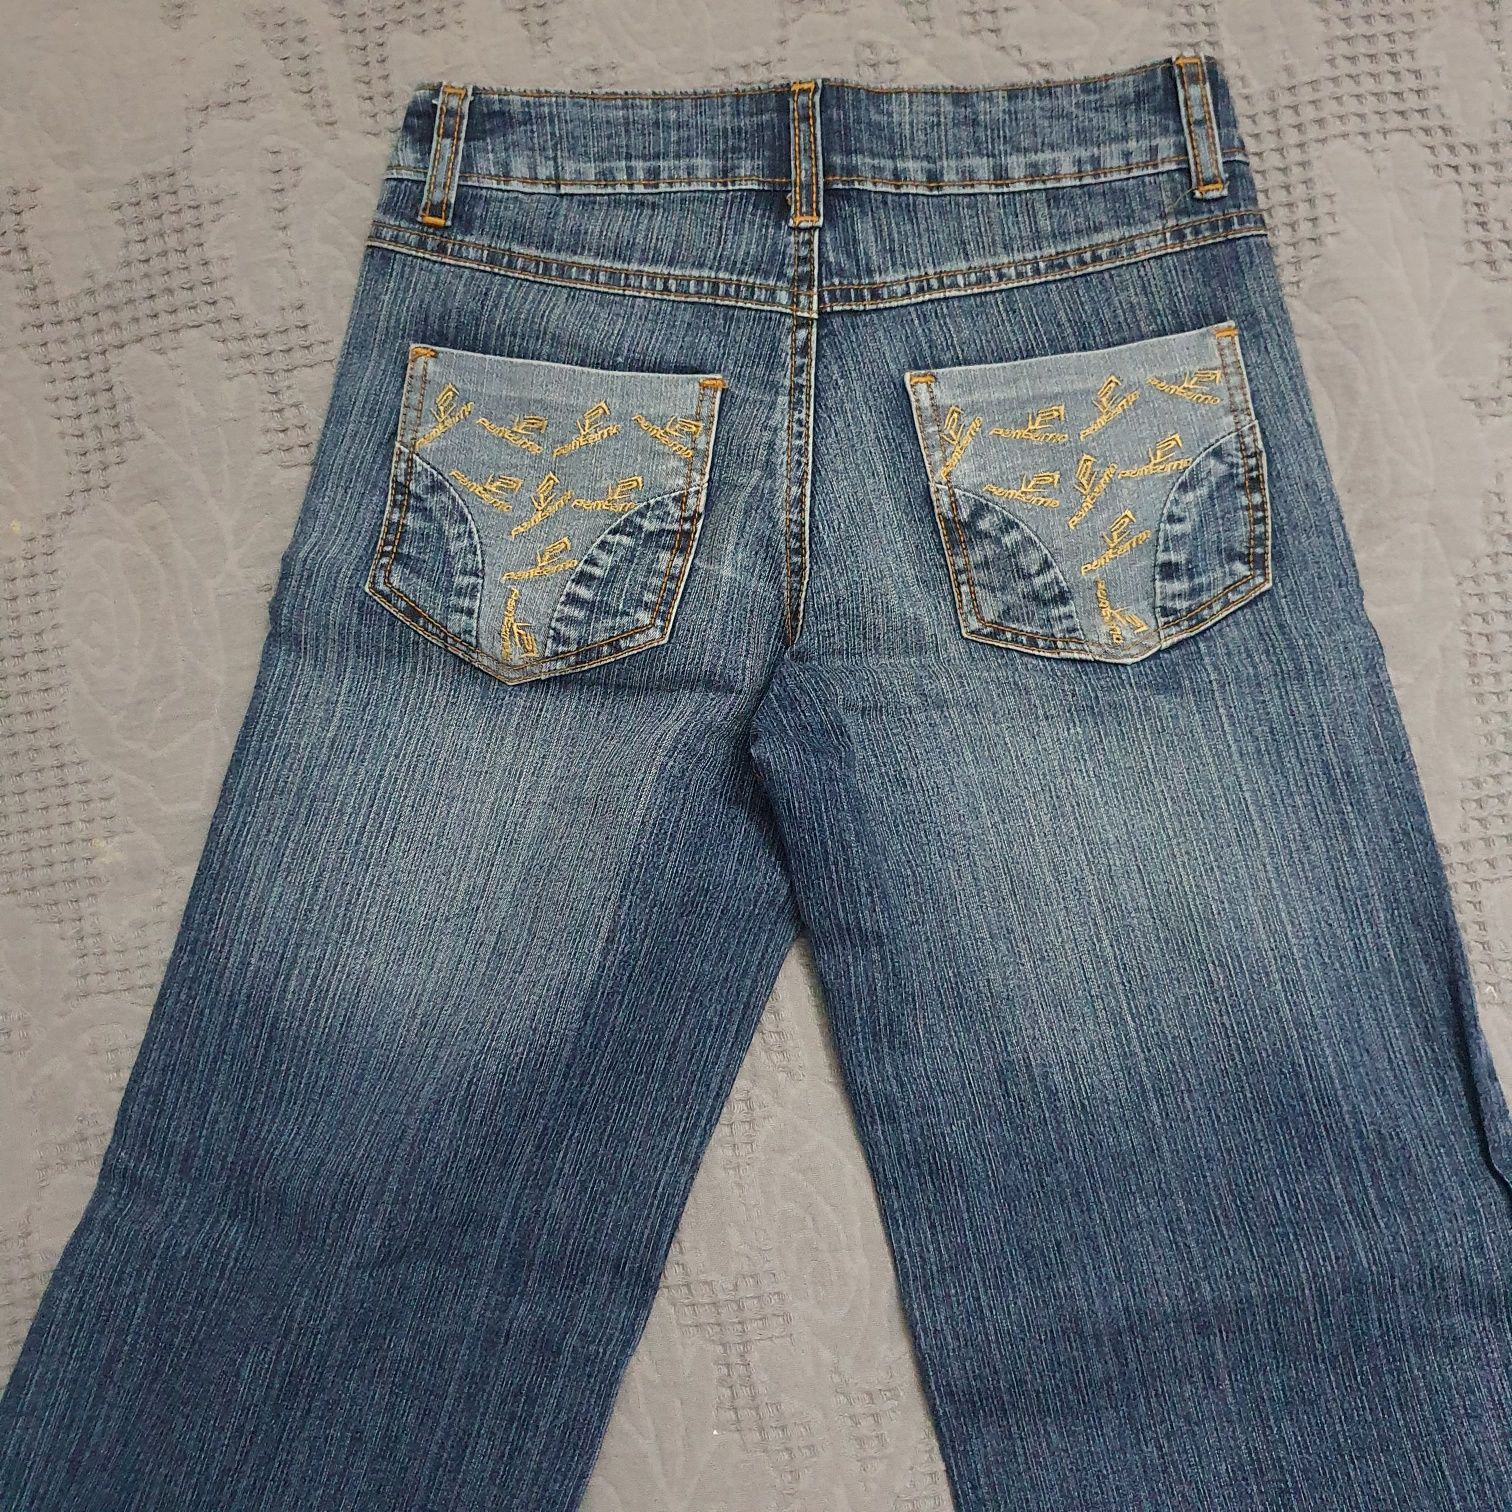 Женские брюки джинсы